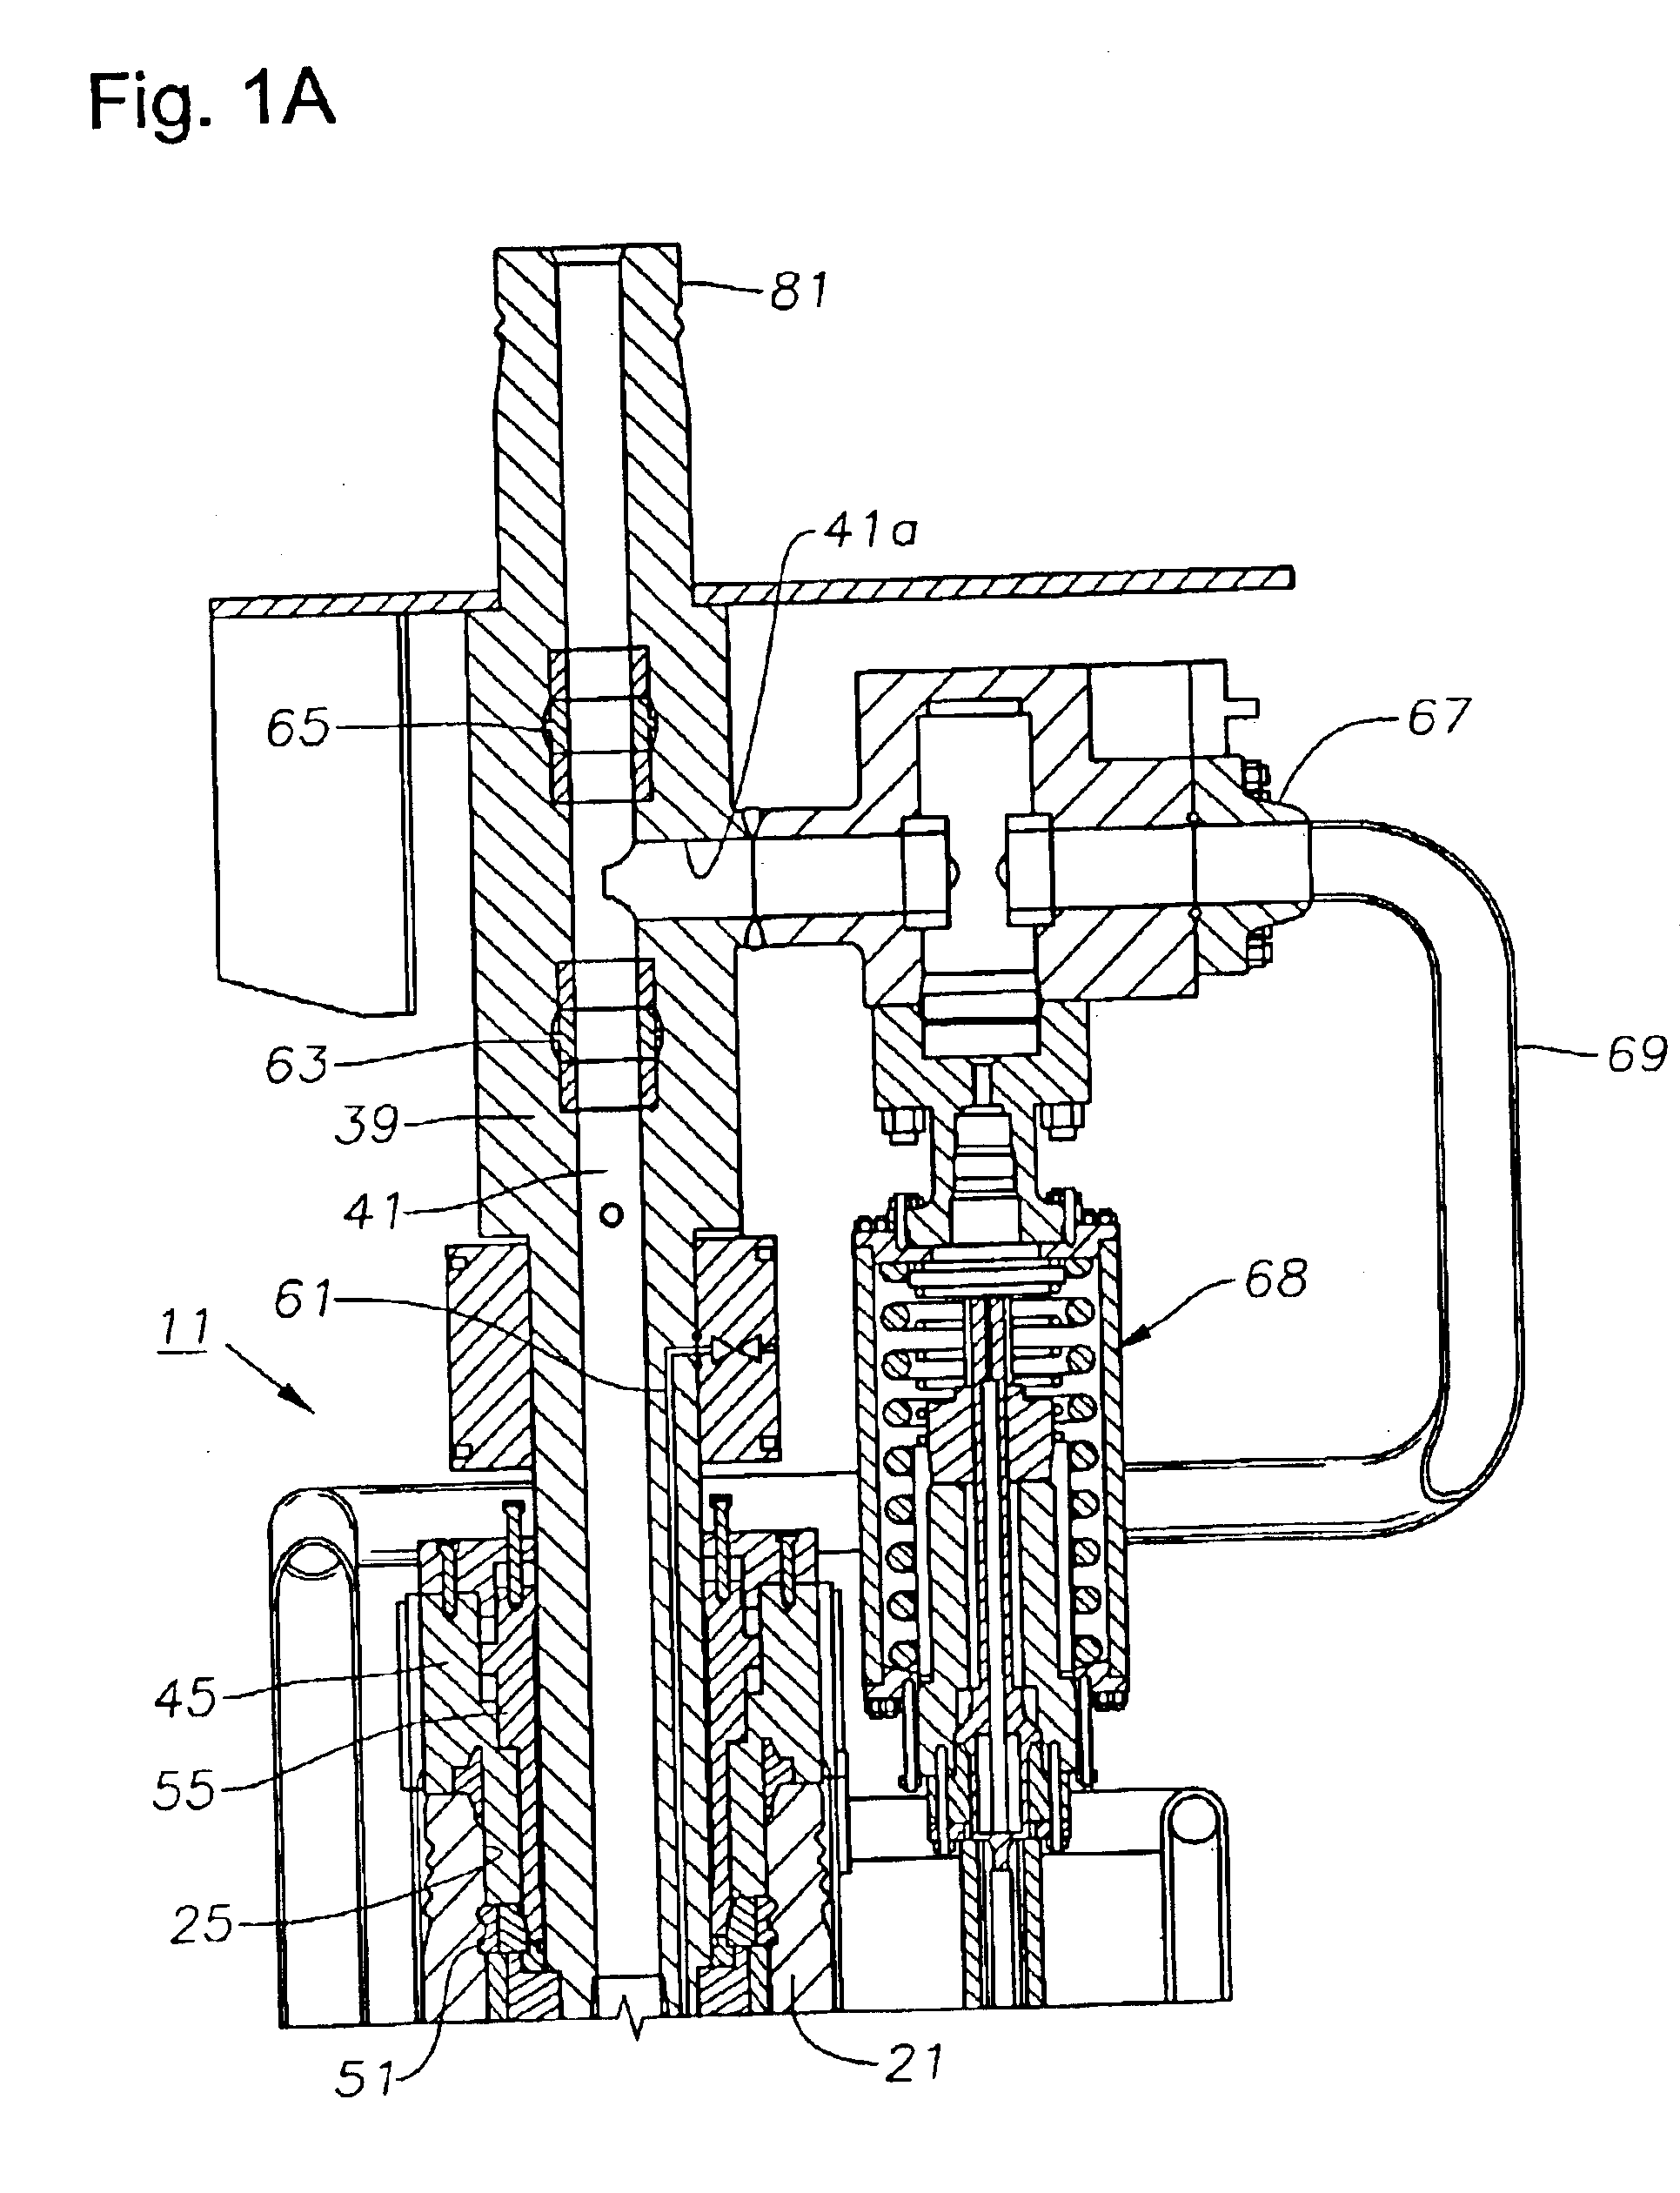 Tubing annulus valve